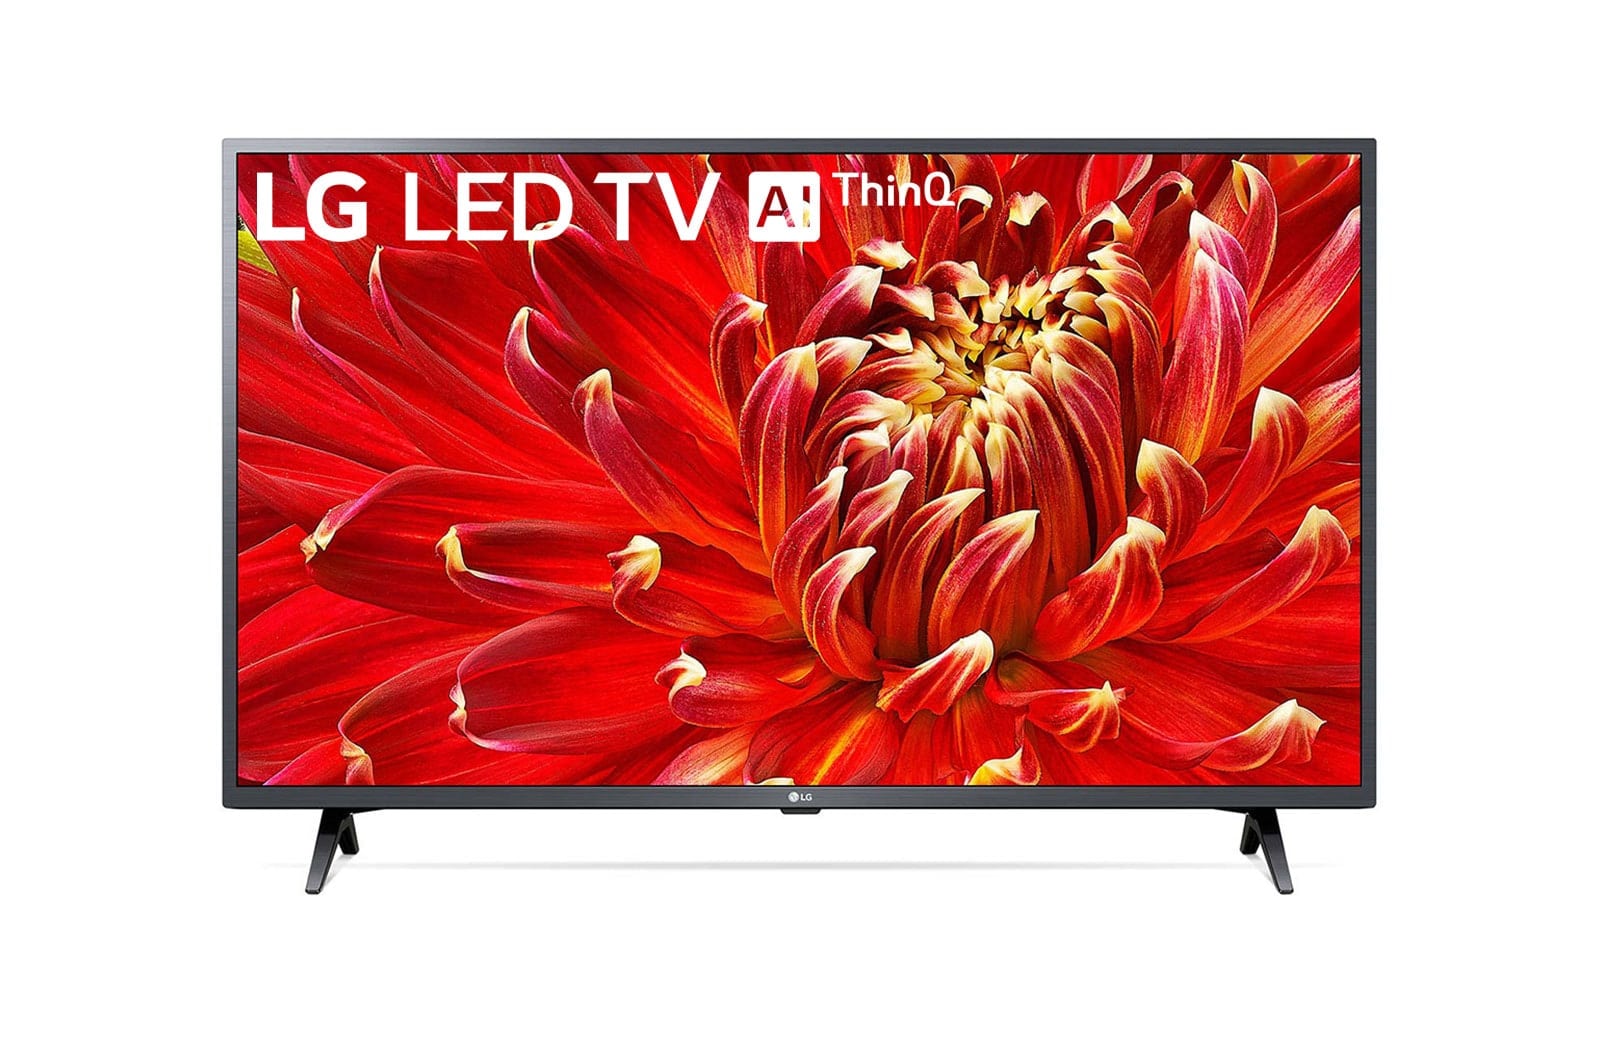 LG LED Smart TV 43 inch Full HD